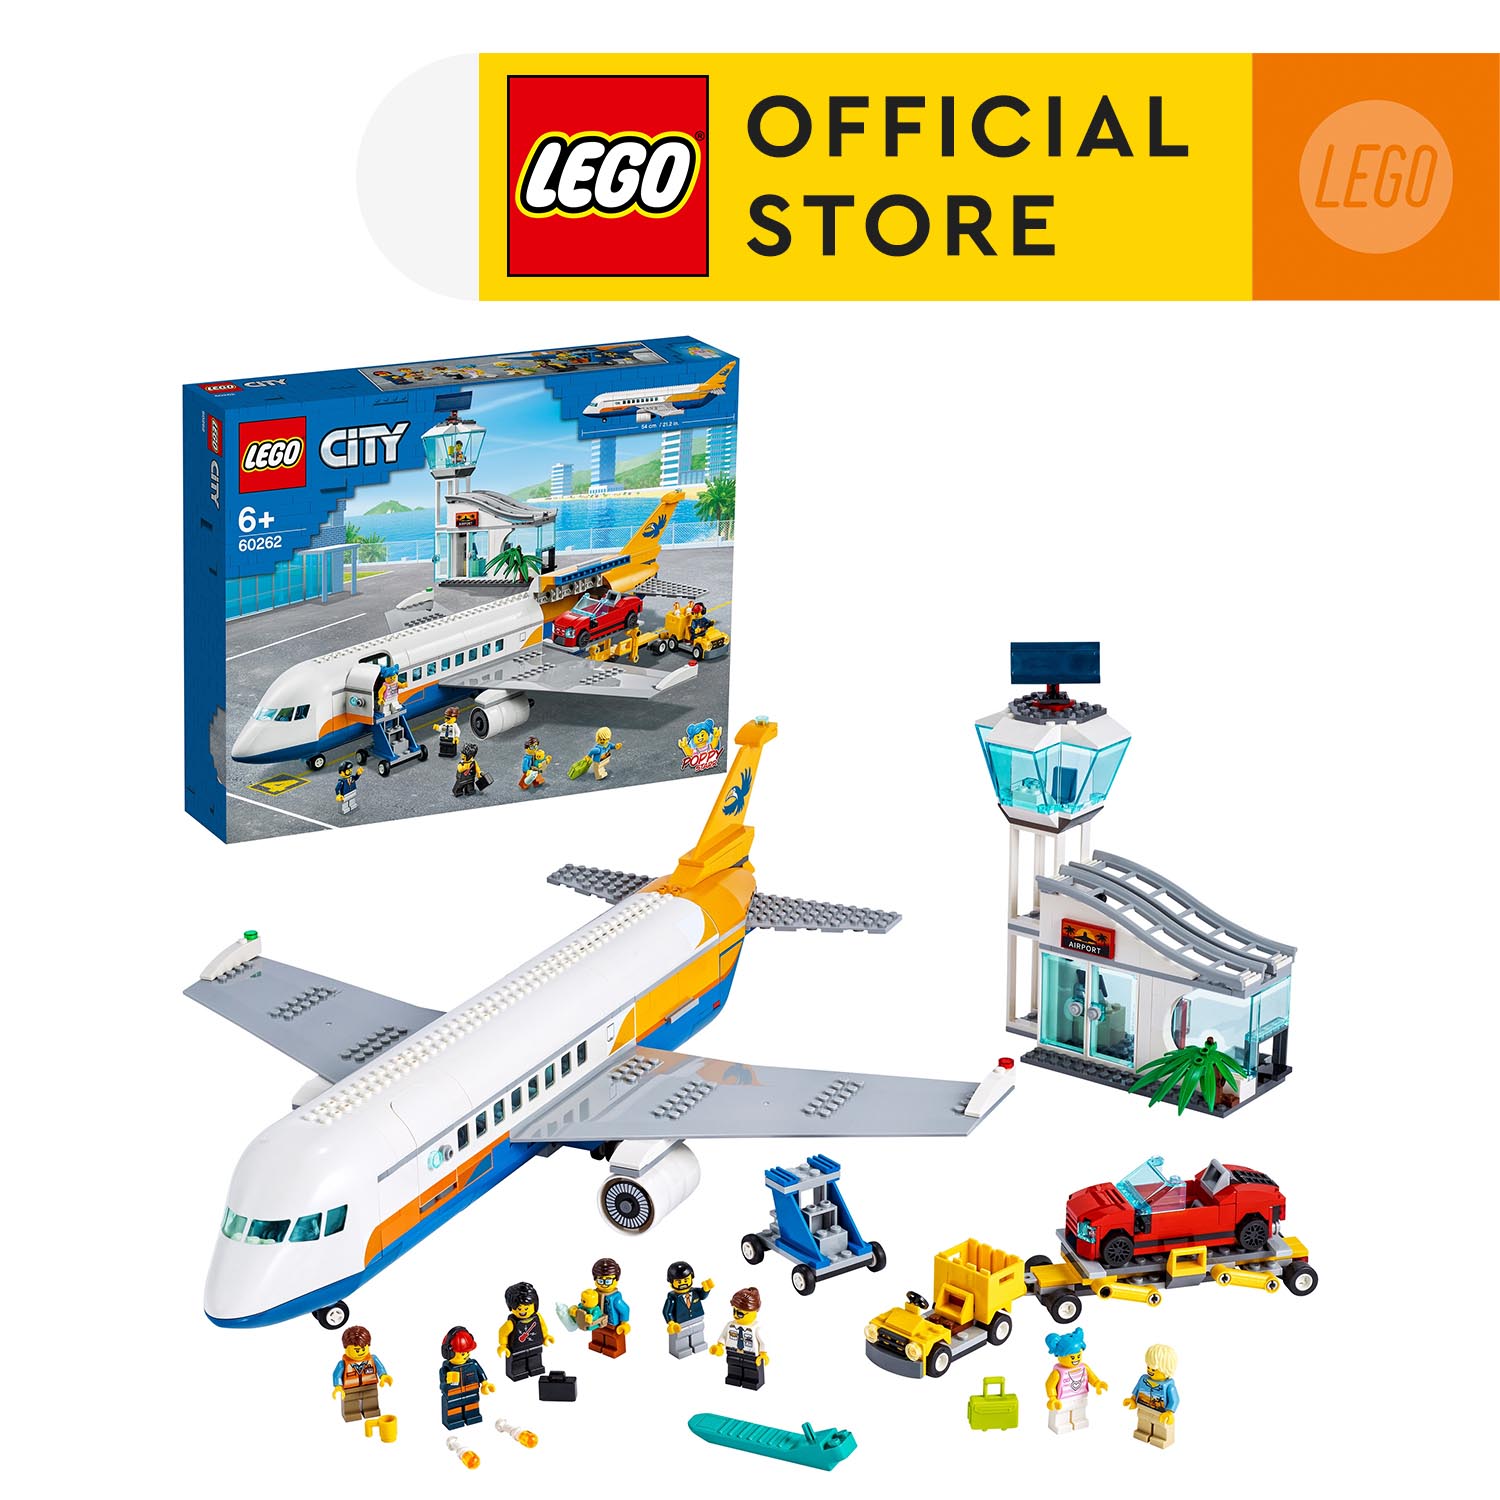 LEGO CITY 60262 Máy Bay Chuyên Chở Hành Khách ( 669 Chi tiết) Bộ gạch đồ chơi lắp ráp cho trẻ em